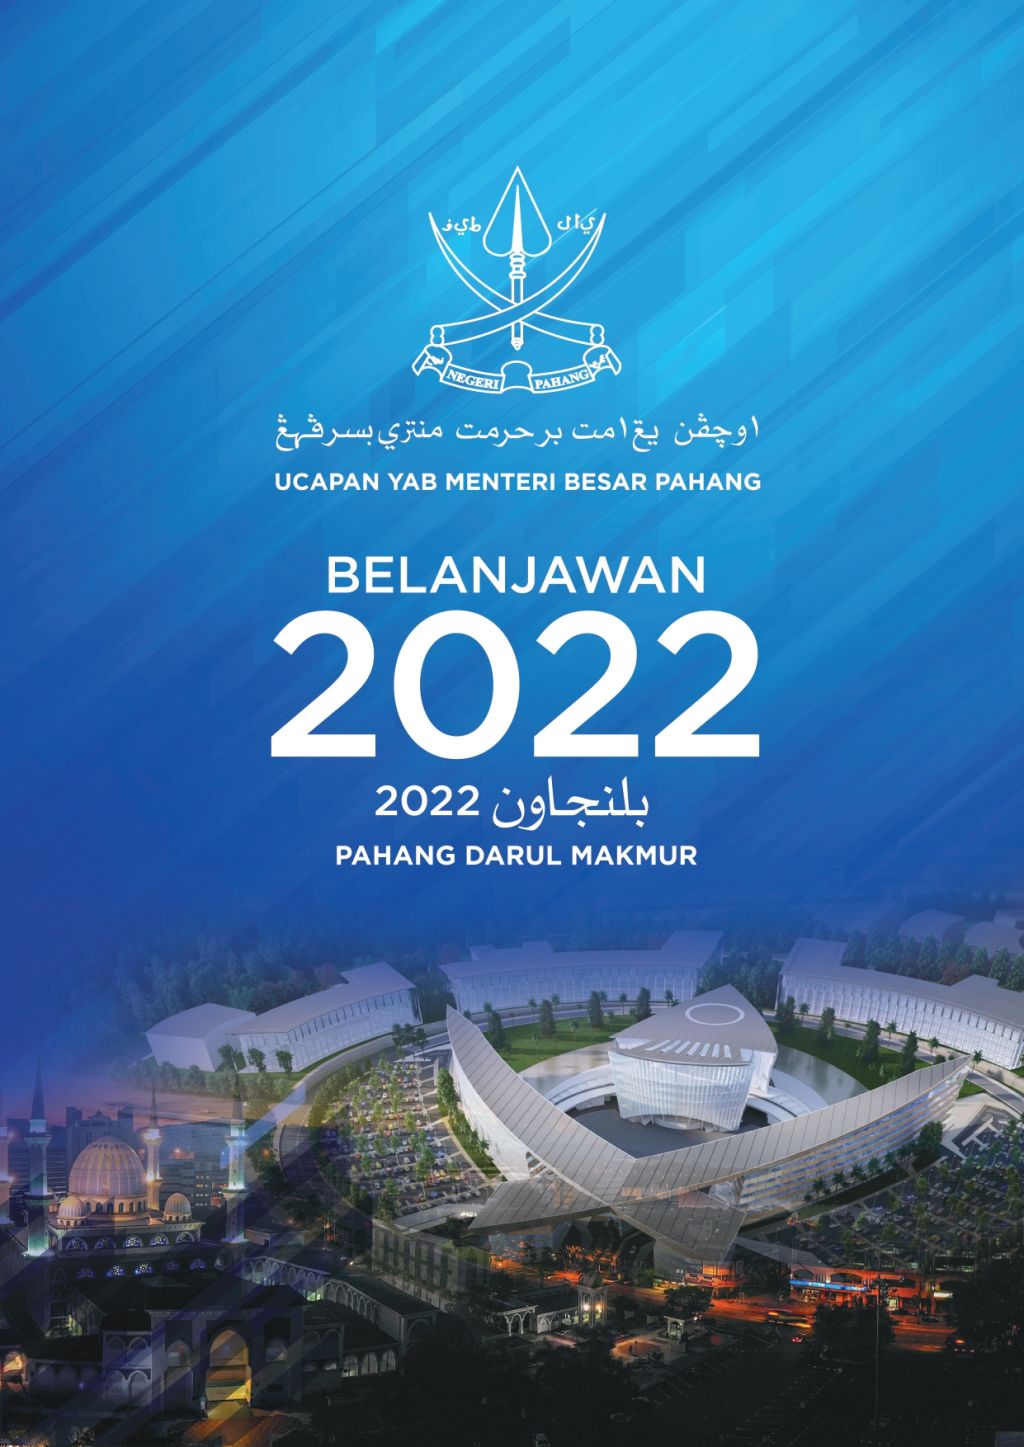 Belanjawan 2022